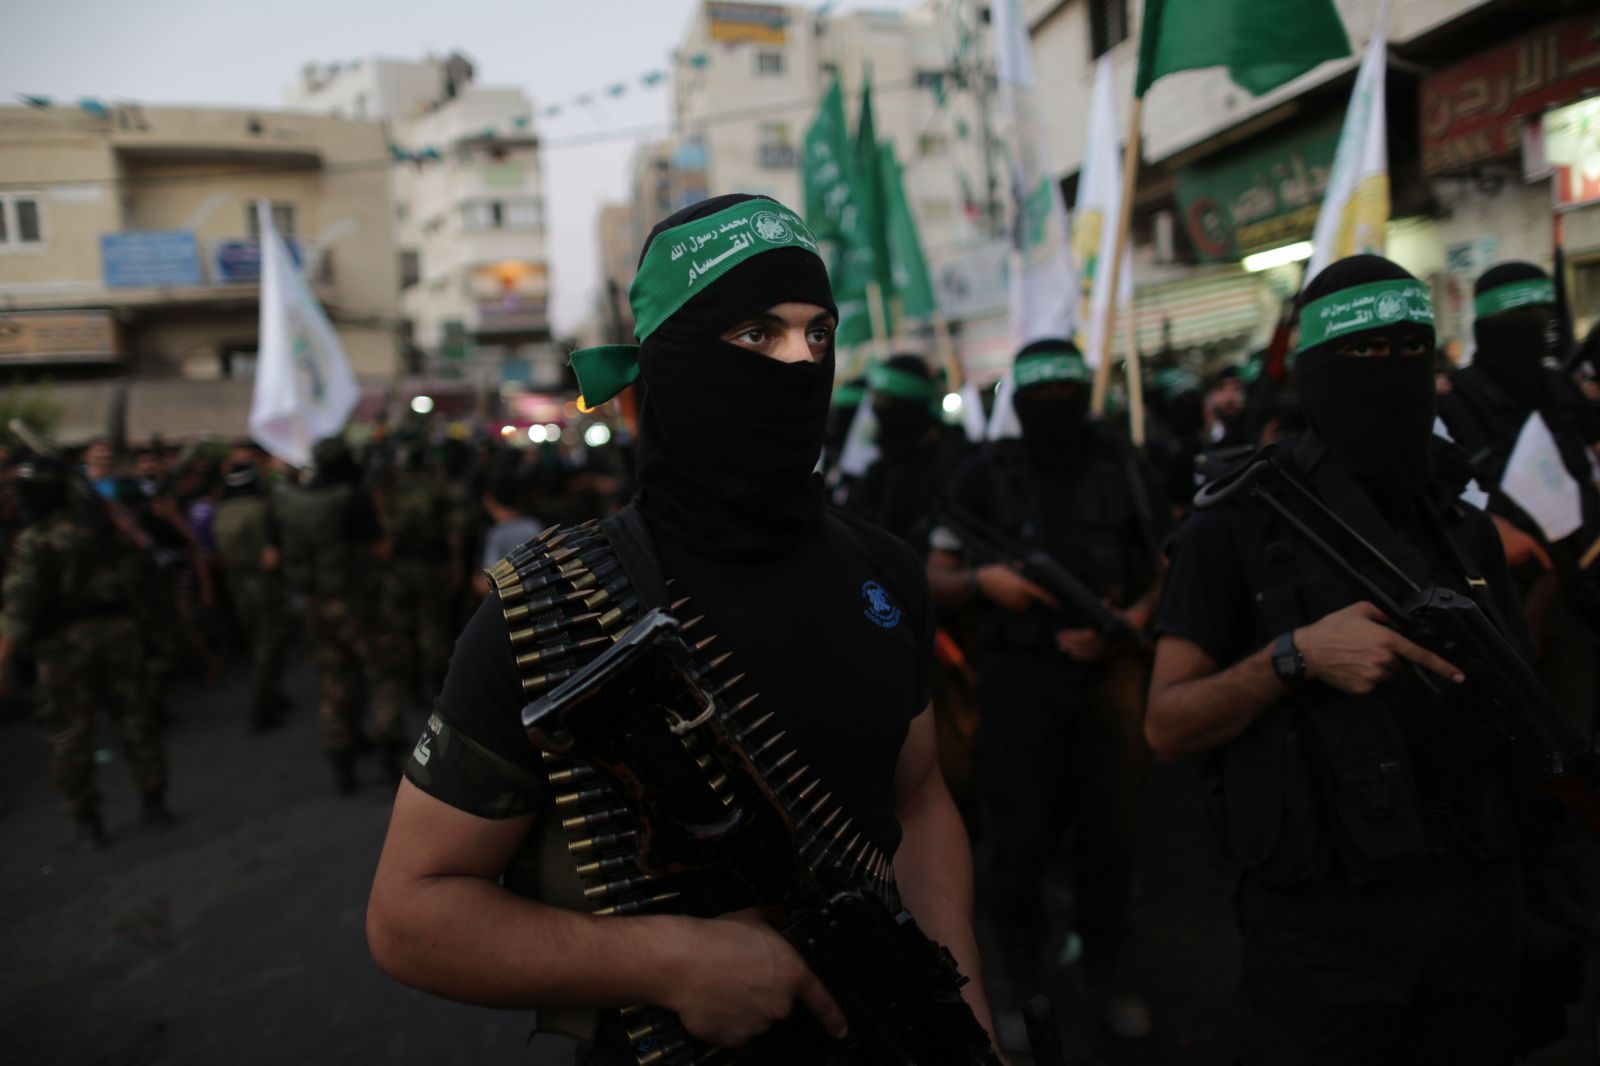 حماس ترحب بقرار المحكمة المصرية بإلغاء اعتبارها "منظمة إرهابية"